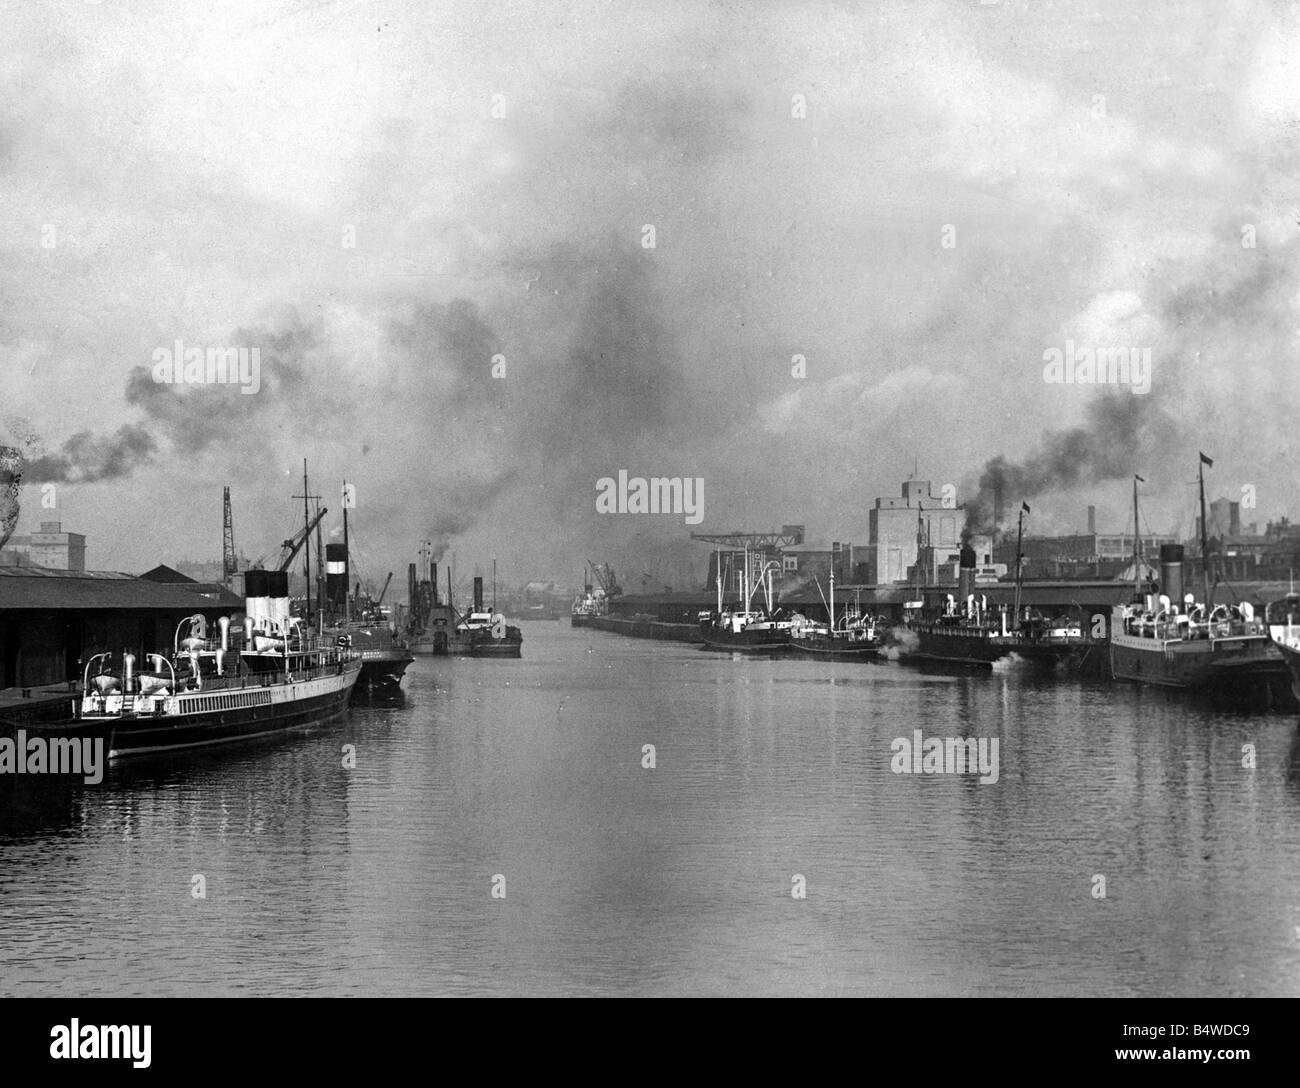 Clyde Glasgow 1947 péniches barges bateaux bateaux à vapeur de fumée Scène de rivière grues grue Juin 1947 Mirrorpix Banque D'Images